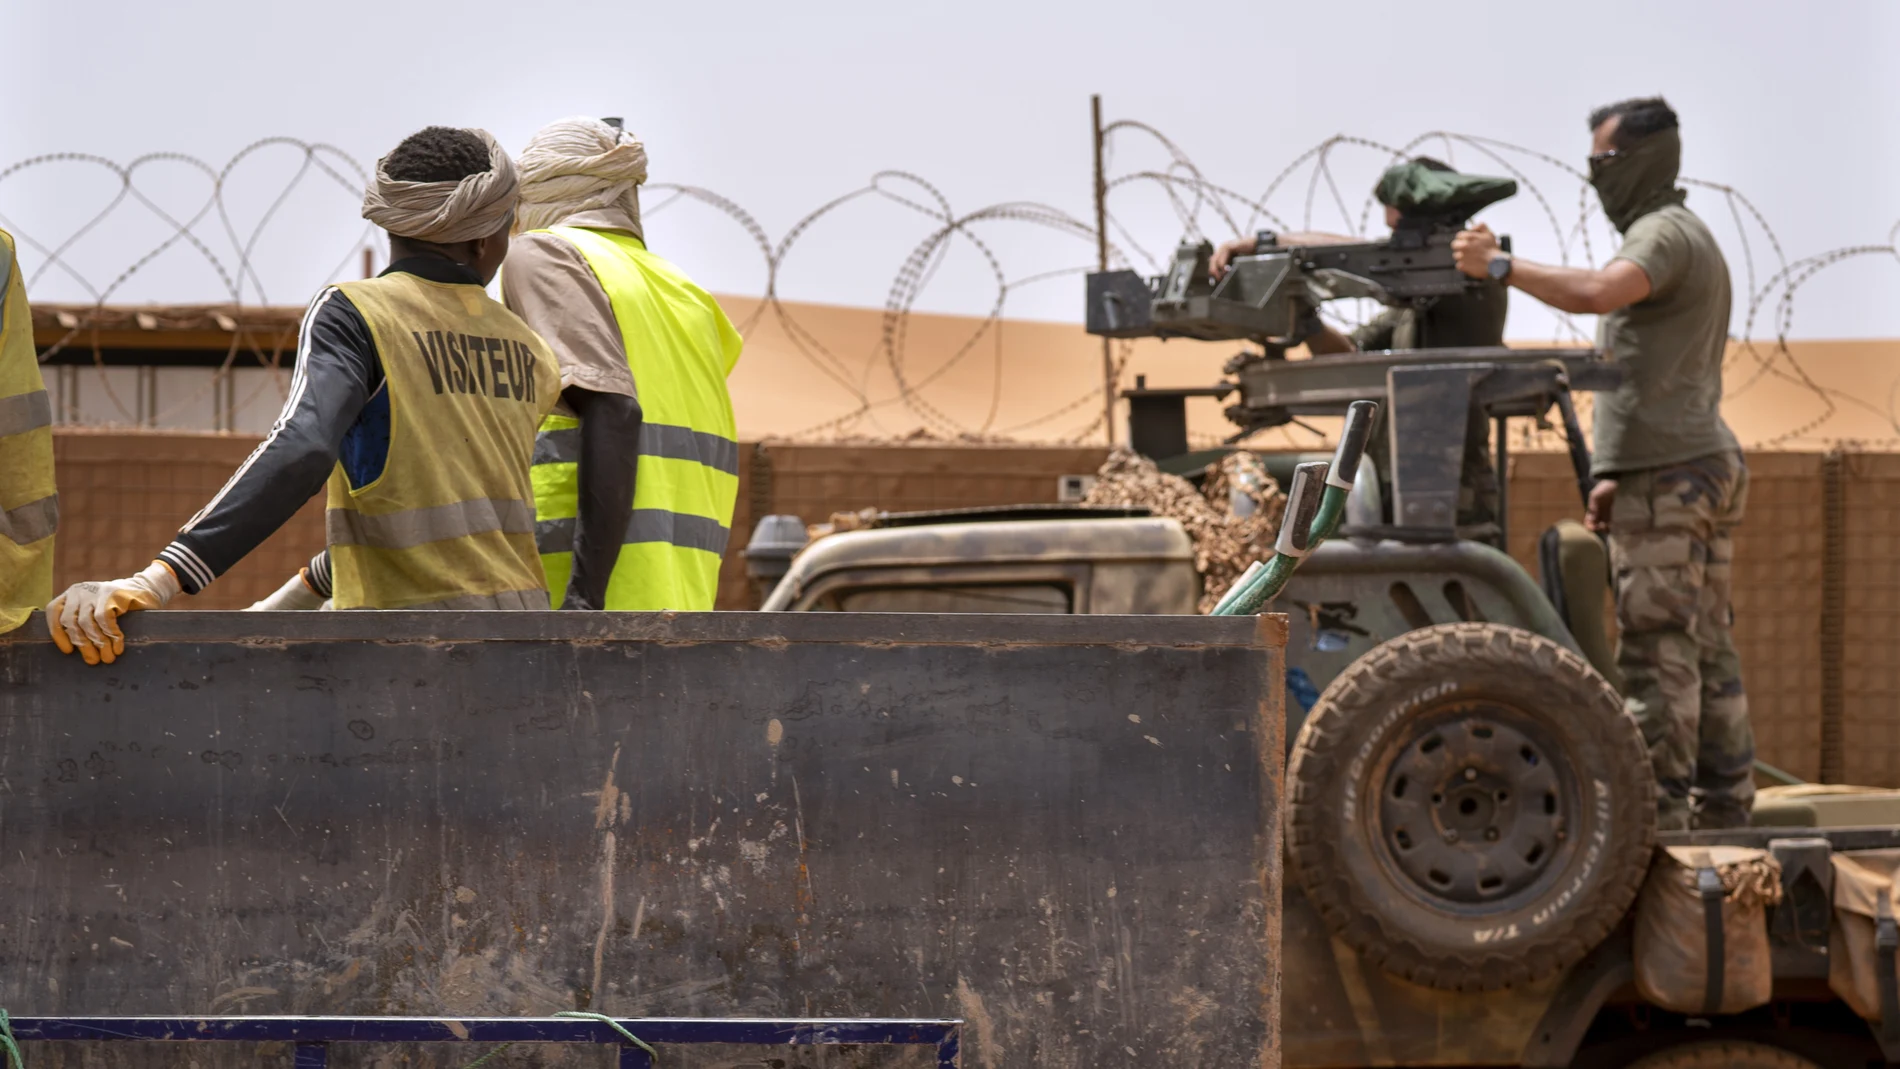 Trece miembros malienses del GAR-SI, la unidad que entrena la Guardia Civil, fueron asesinados en agosto en un atentado perpetrado en ese país, en la zona de Hombori. Además, 20 resultaron heridos (AP)